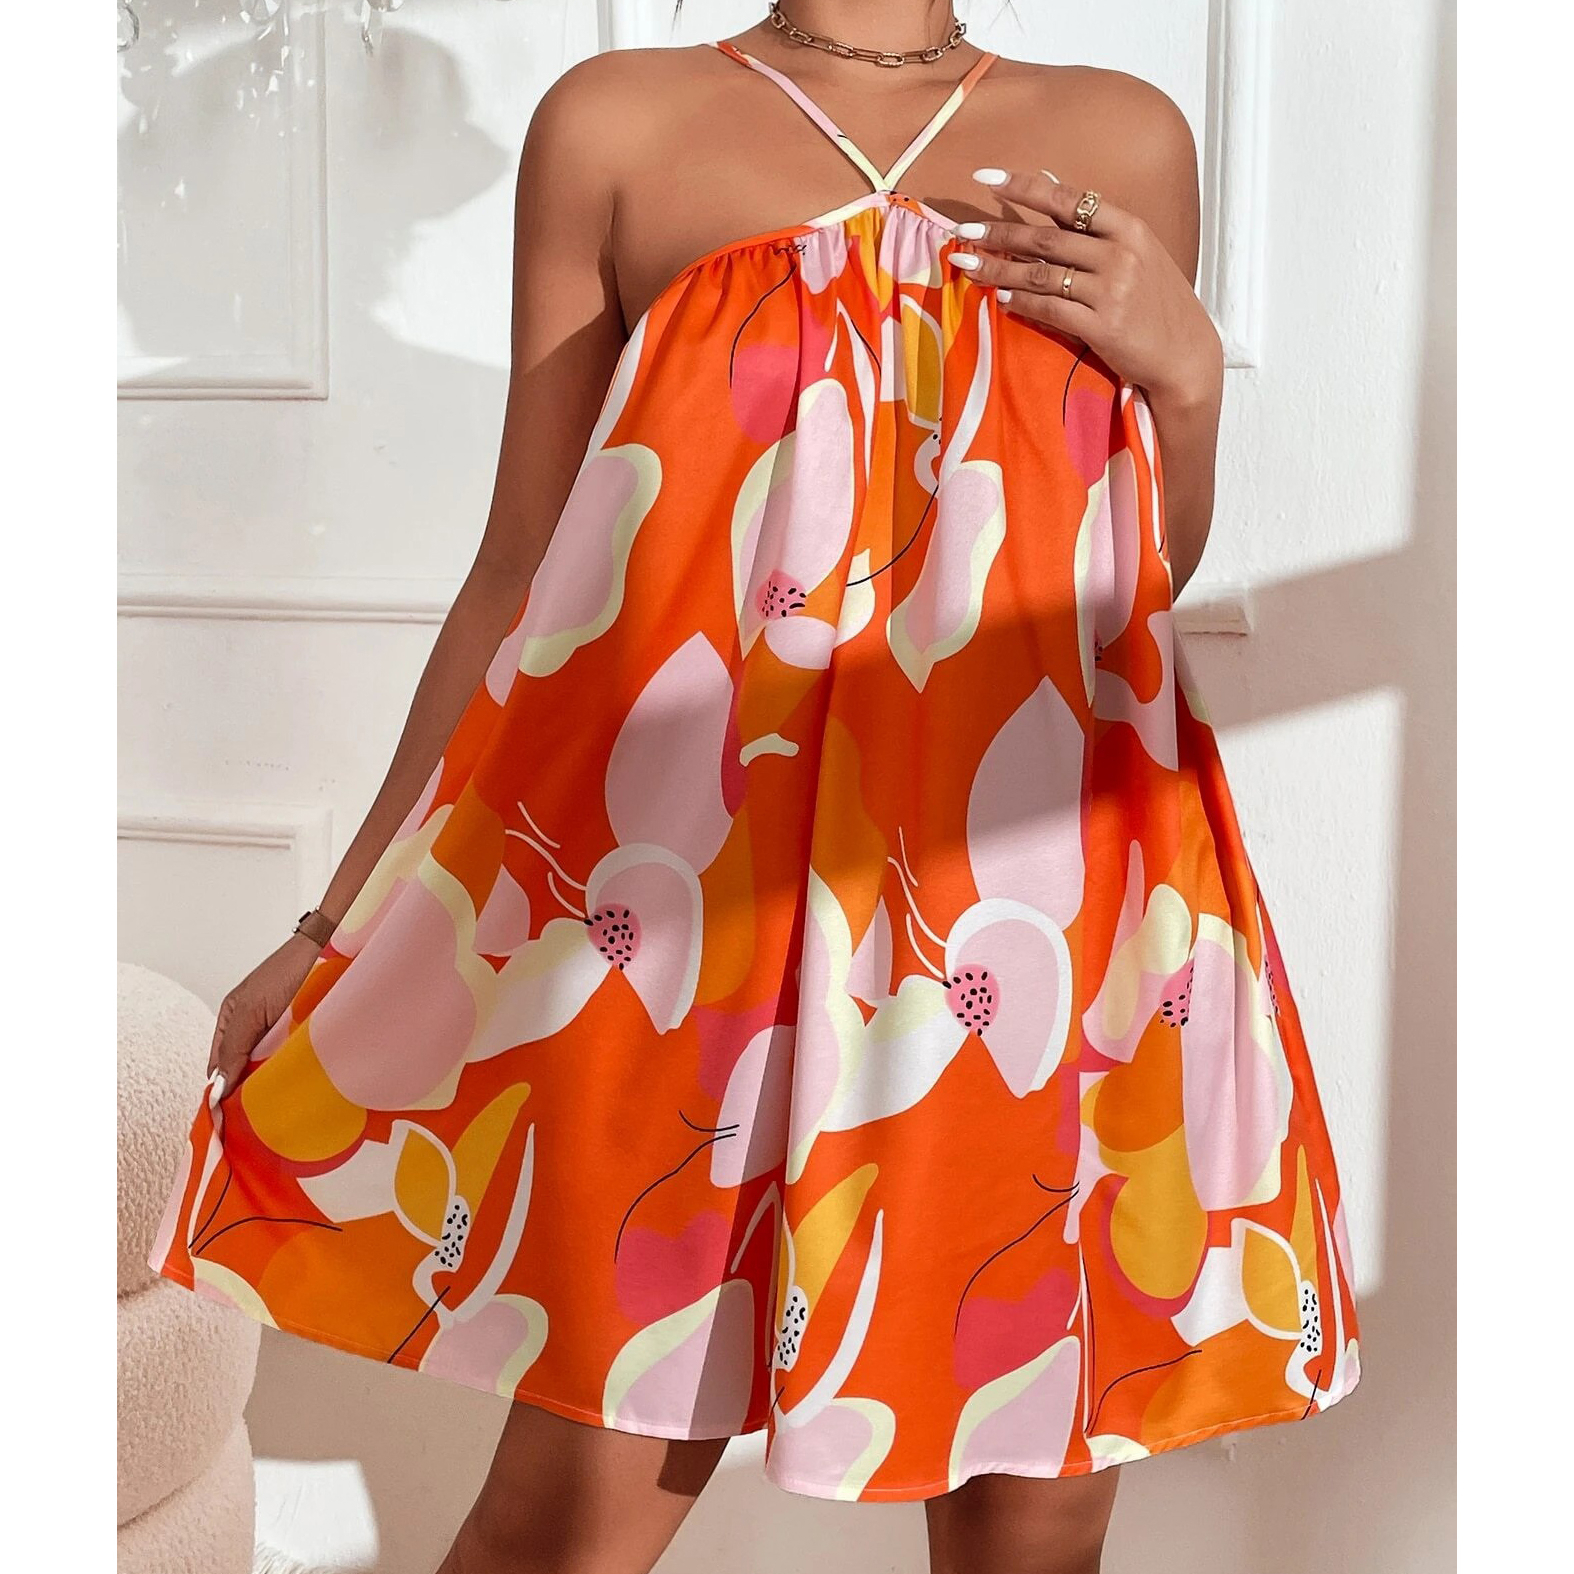 Allover Print Cami Dress - Orange, Medium(6)